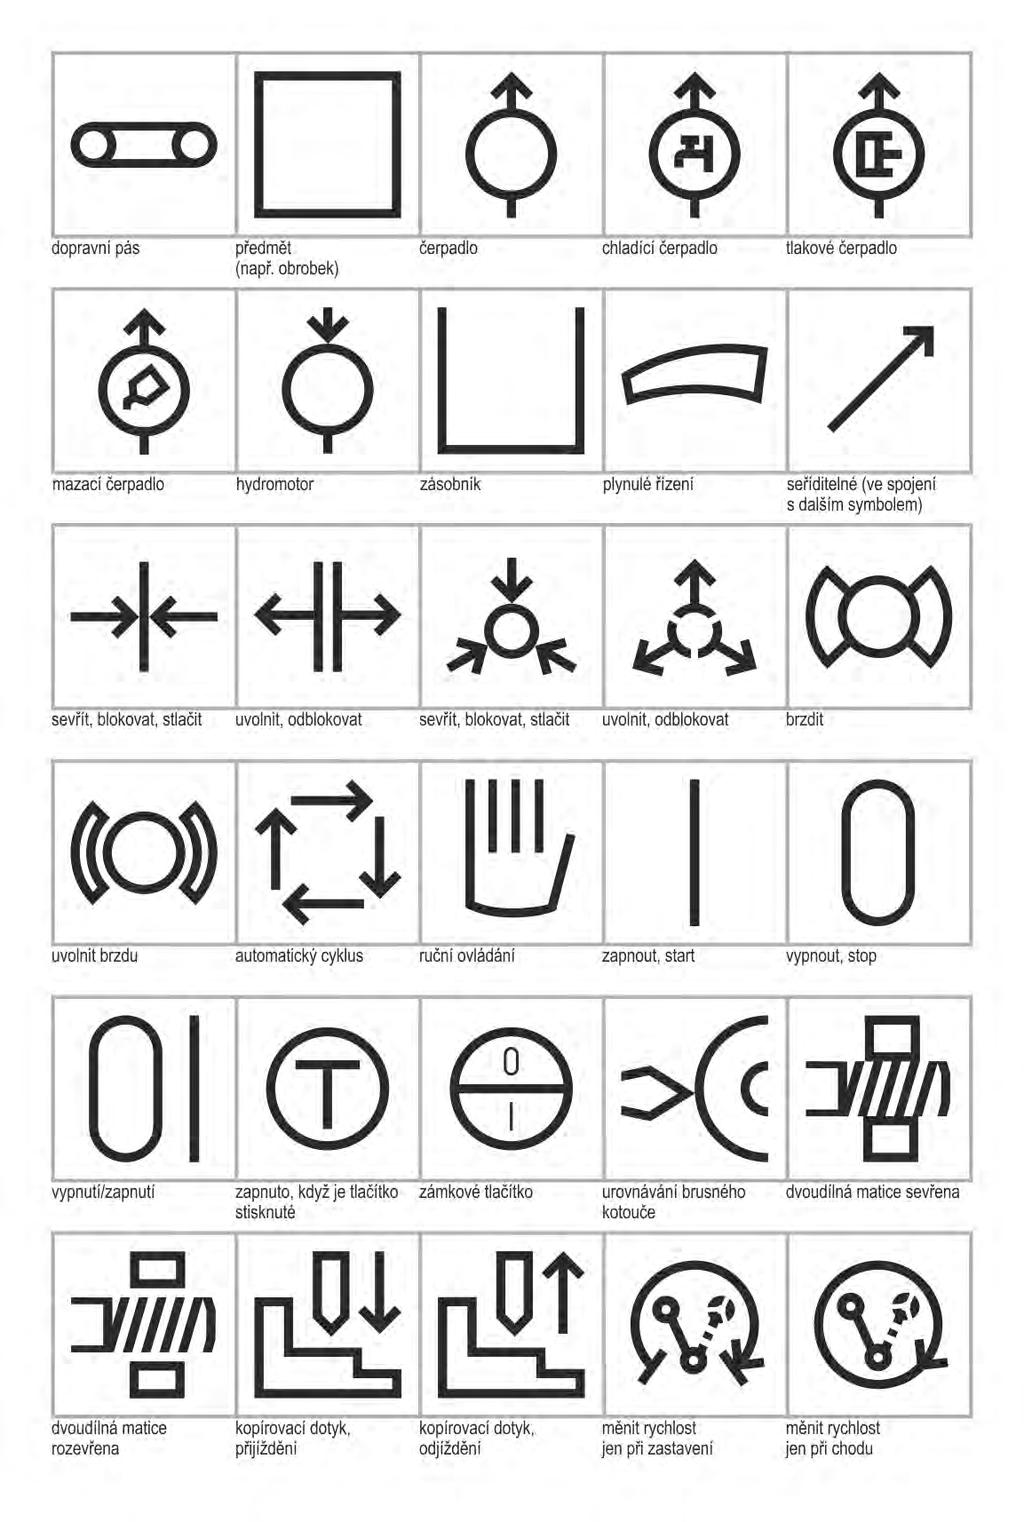 Výsledky dizertační práce Symboly a znaky 1979 Uvedeny jako grafická úprava a rozšíření symbolů k normě ČSN 20